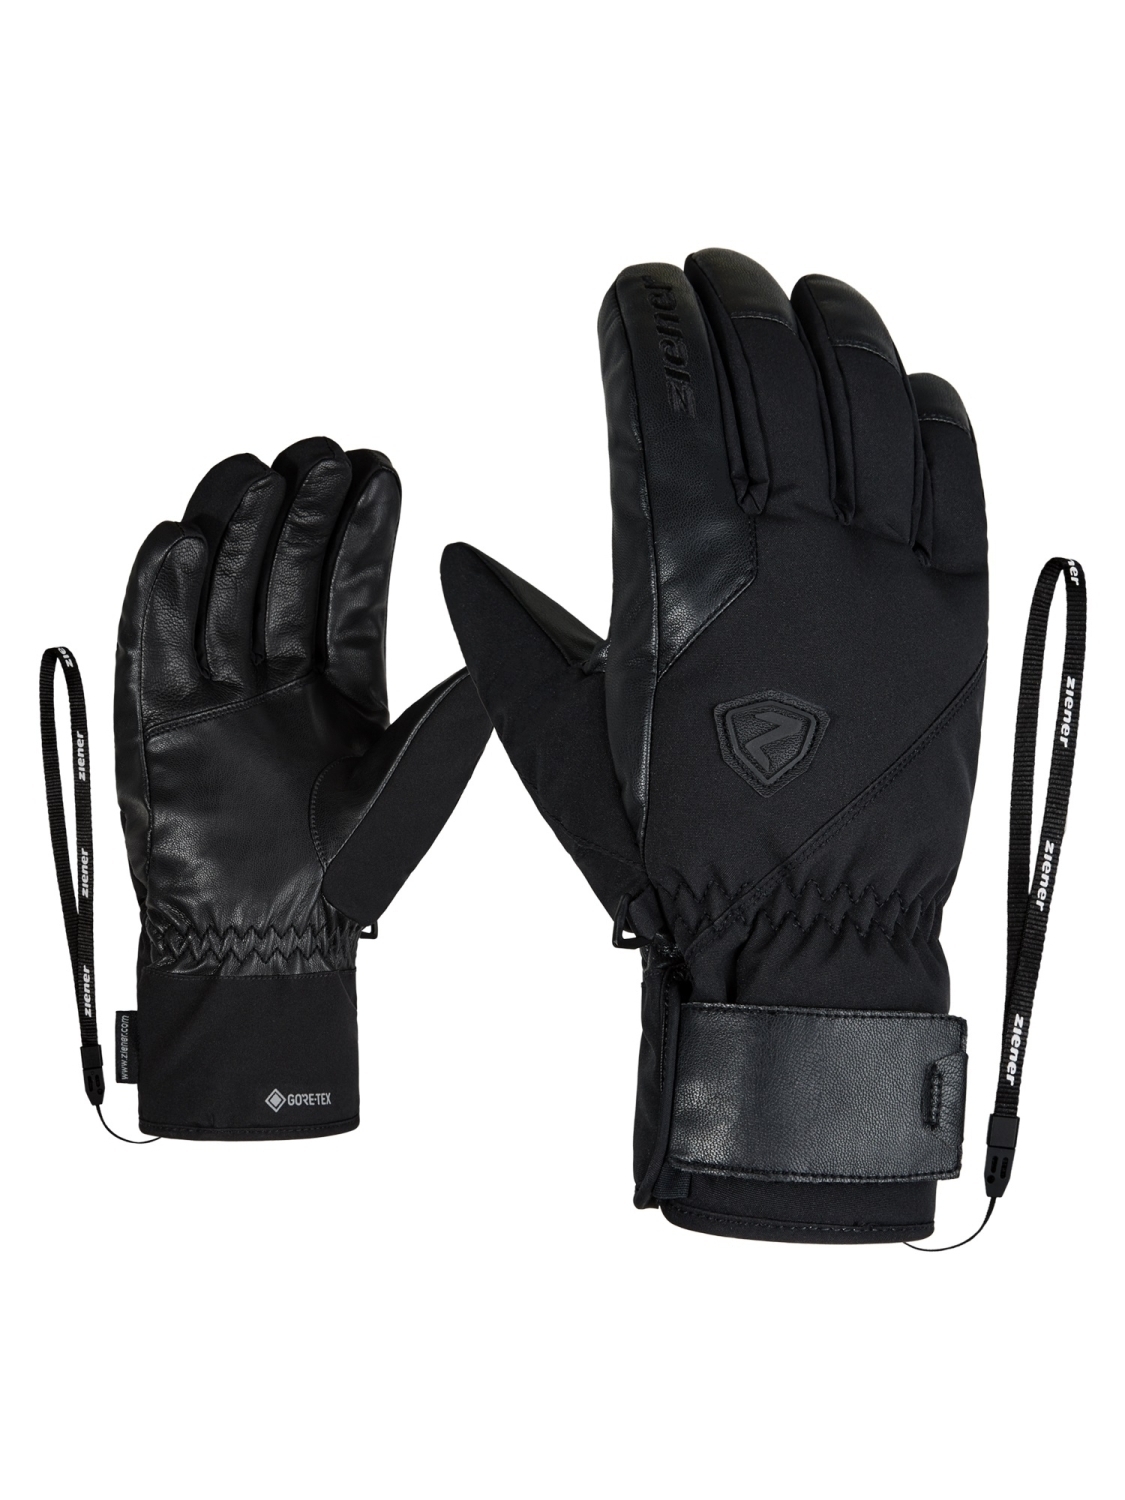 Ziener GENIO GTX PR glove ski alpine online kaufen